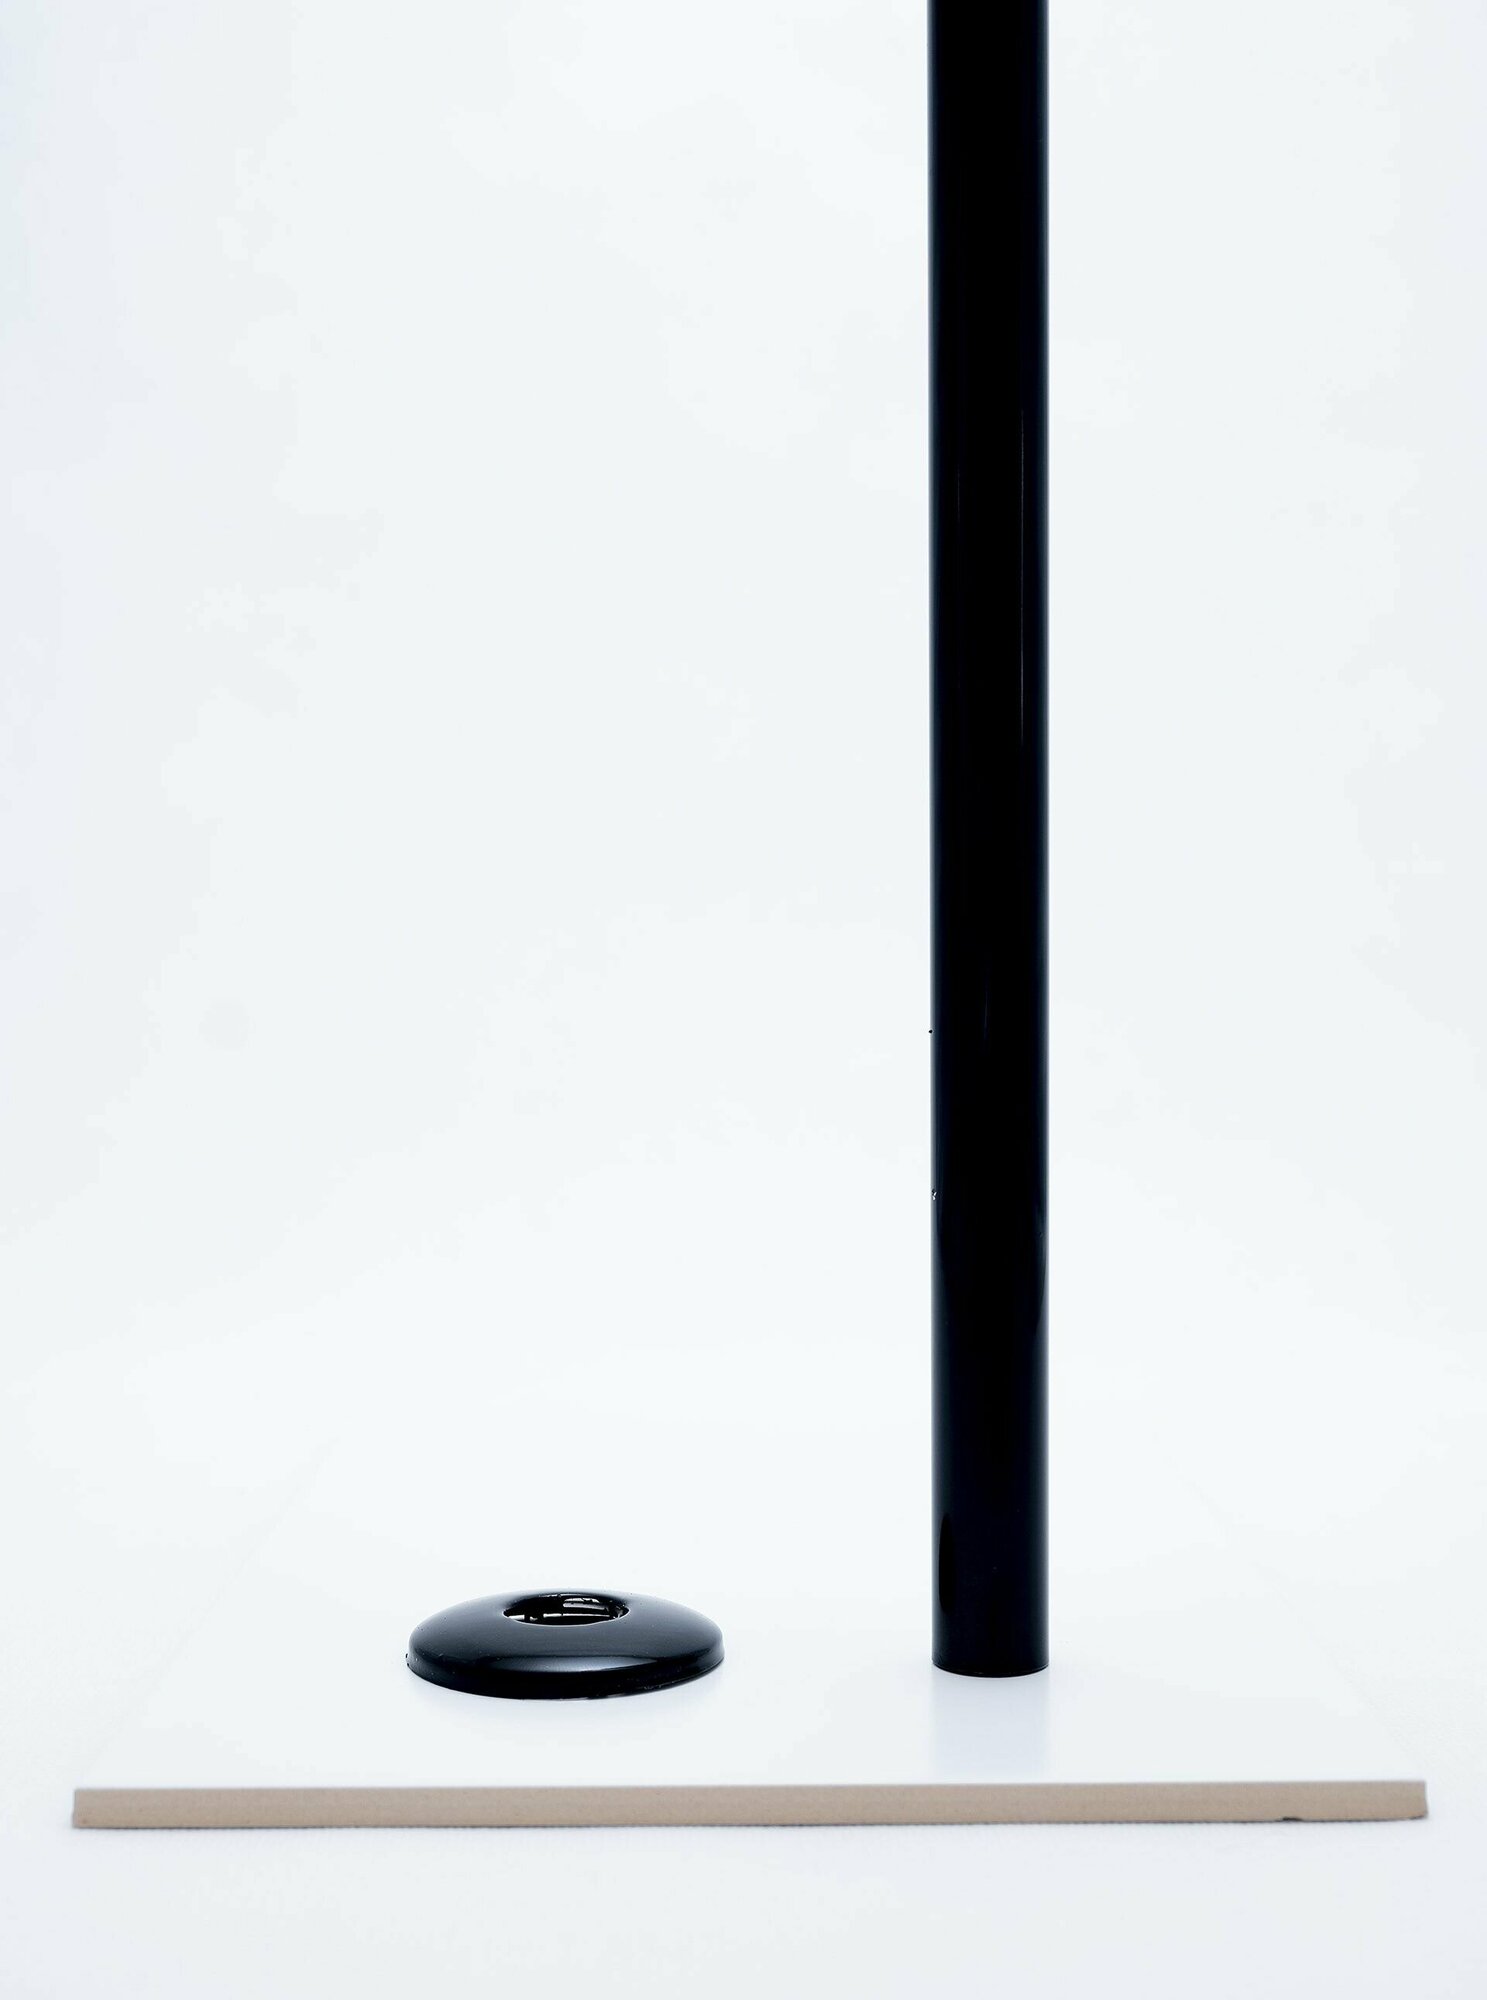 Карниз для ванной 180см (Штанга 20мм) Прямой Усиленный, крепление 6см, цельнометаллический из нержавейки черного цвета